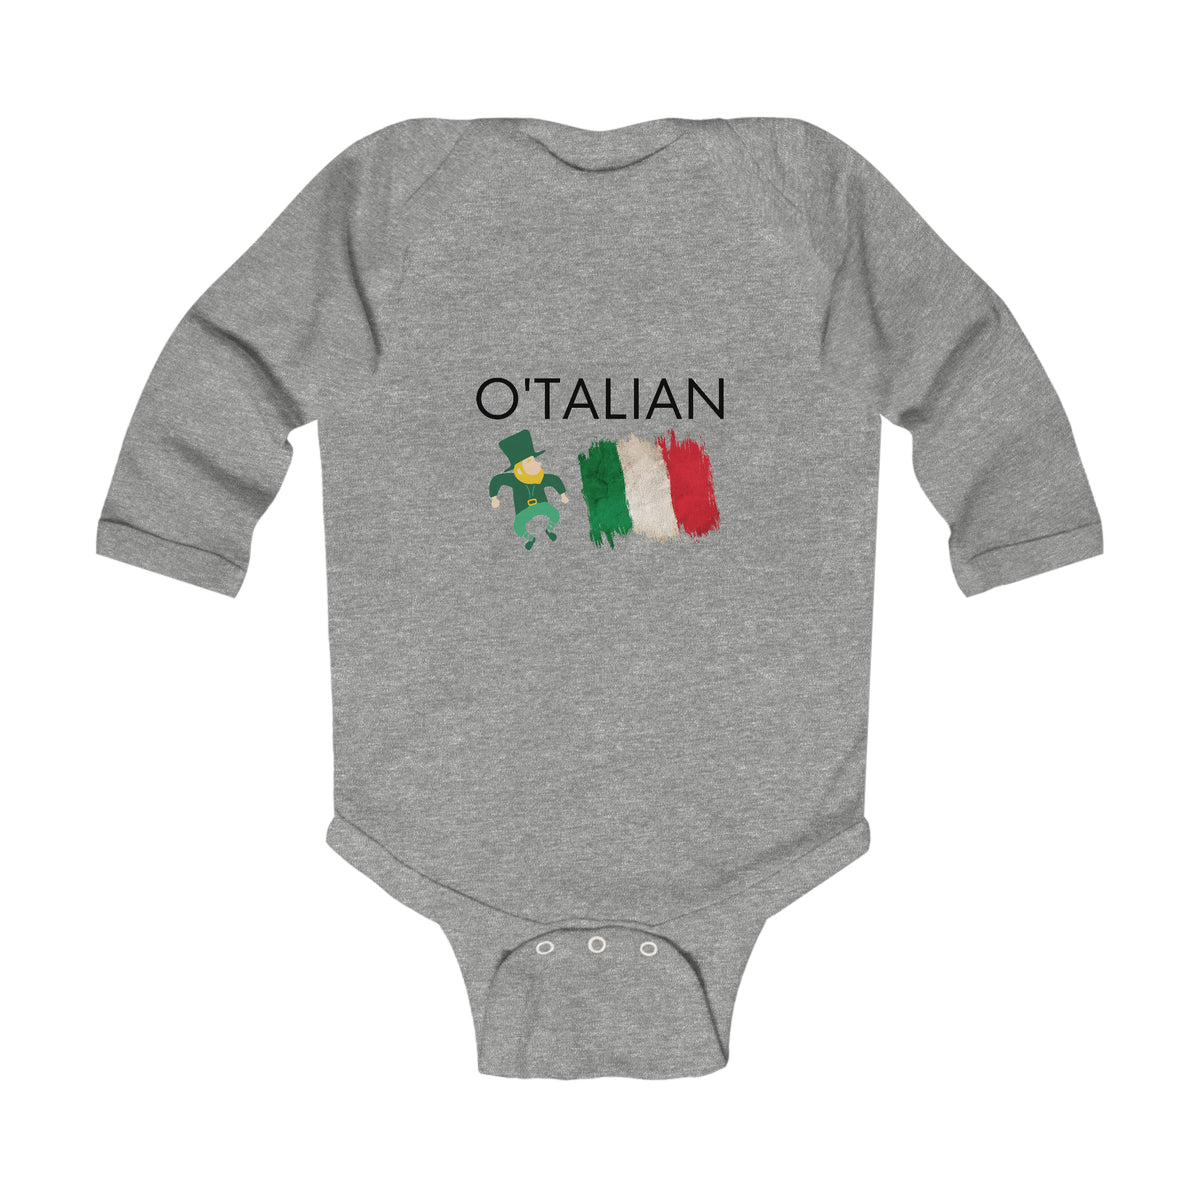 Irish and Italian Onesie®, Irish Baby, Italian Baby, Irish Combo Top for Babes, Funny Baby Tops